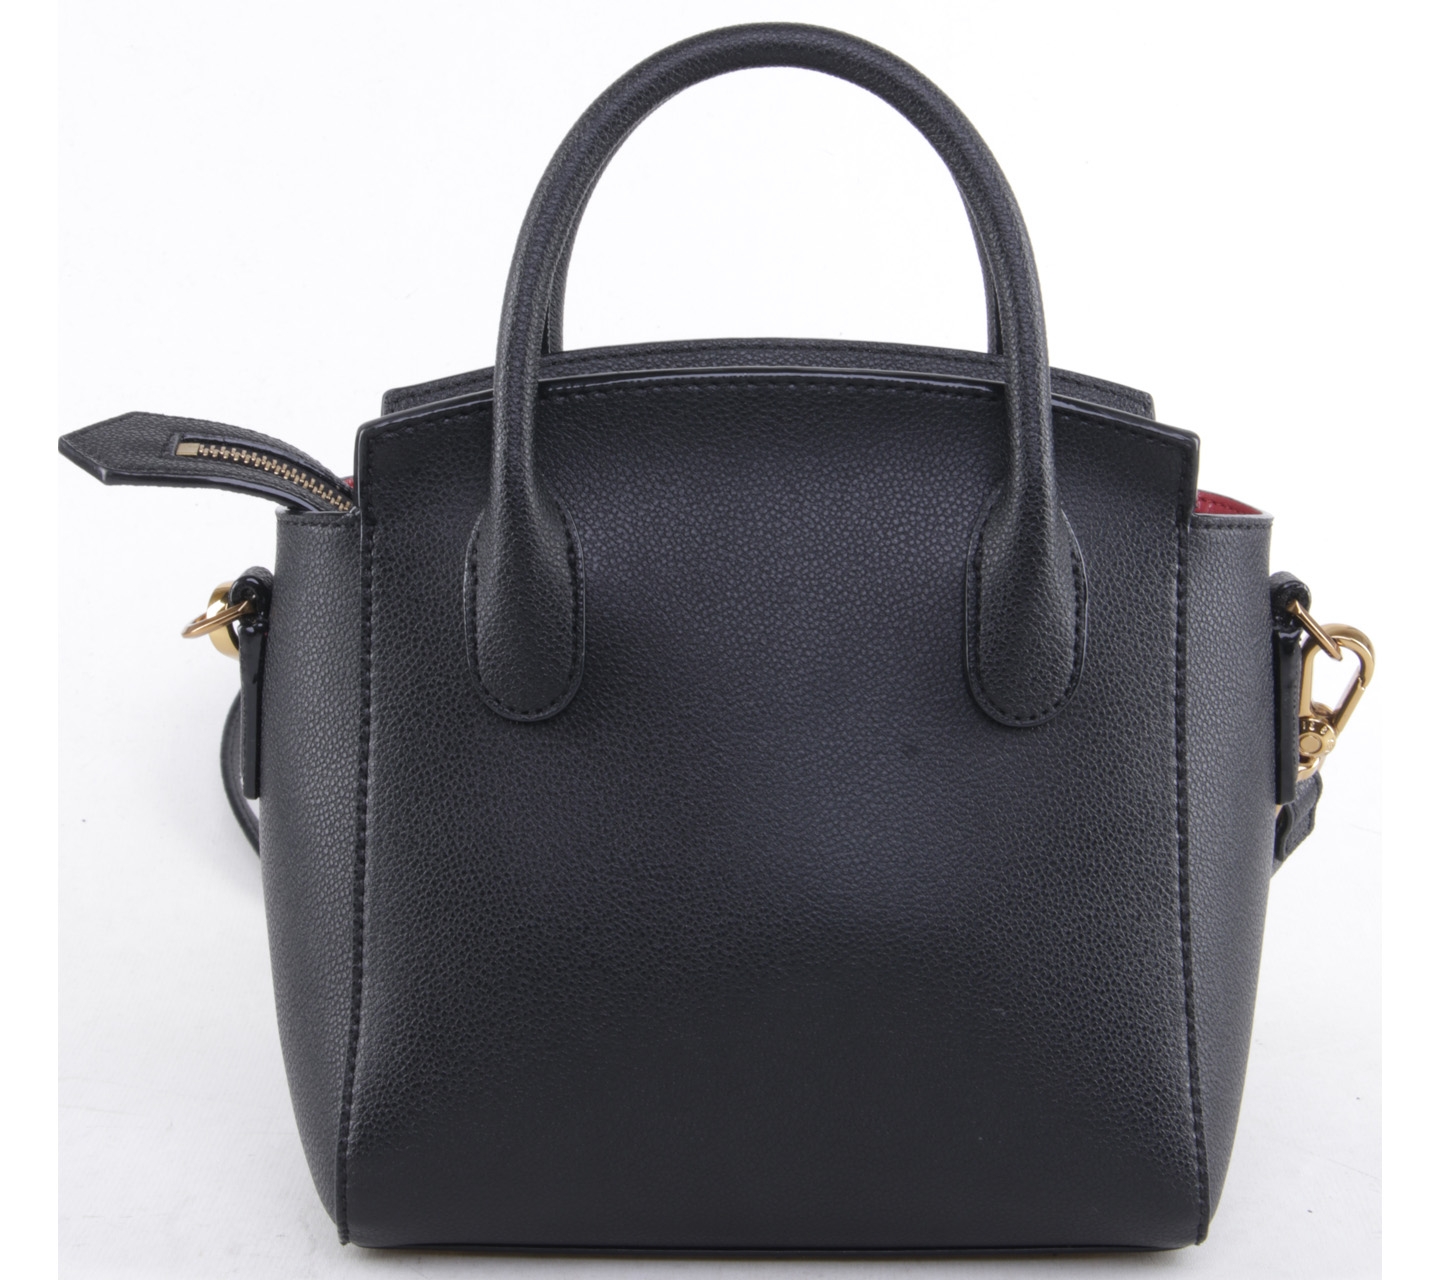 Charles&keith black satchel bag